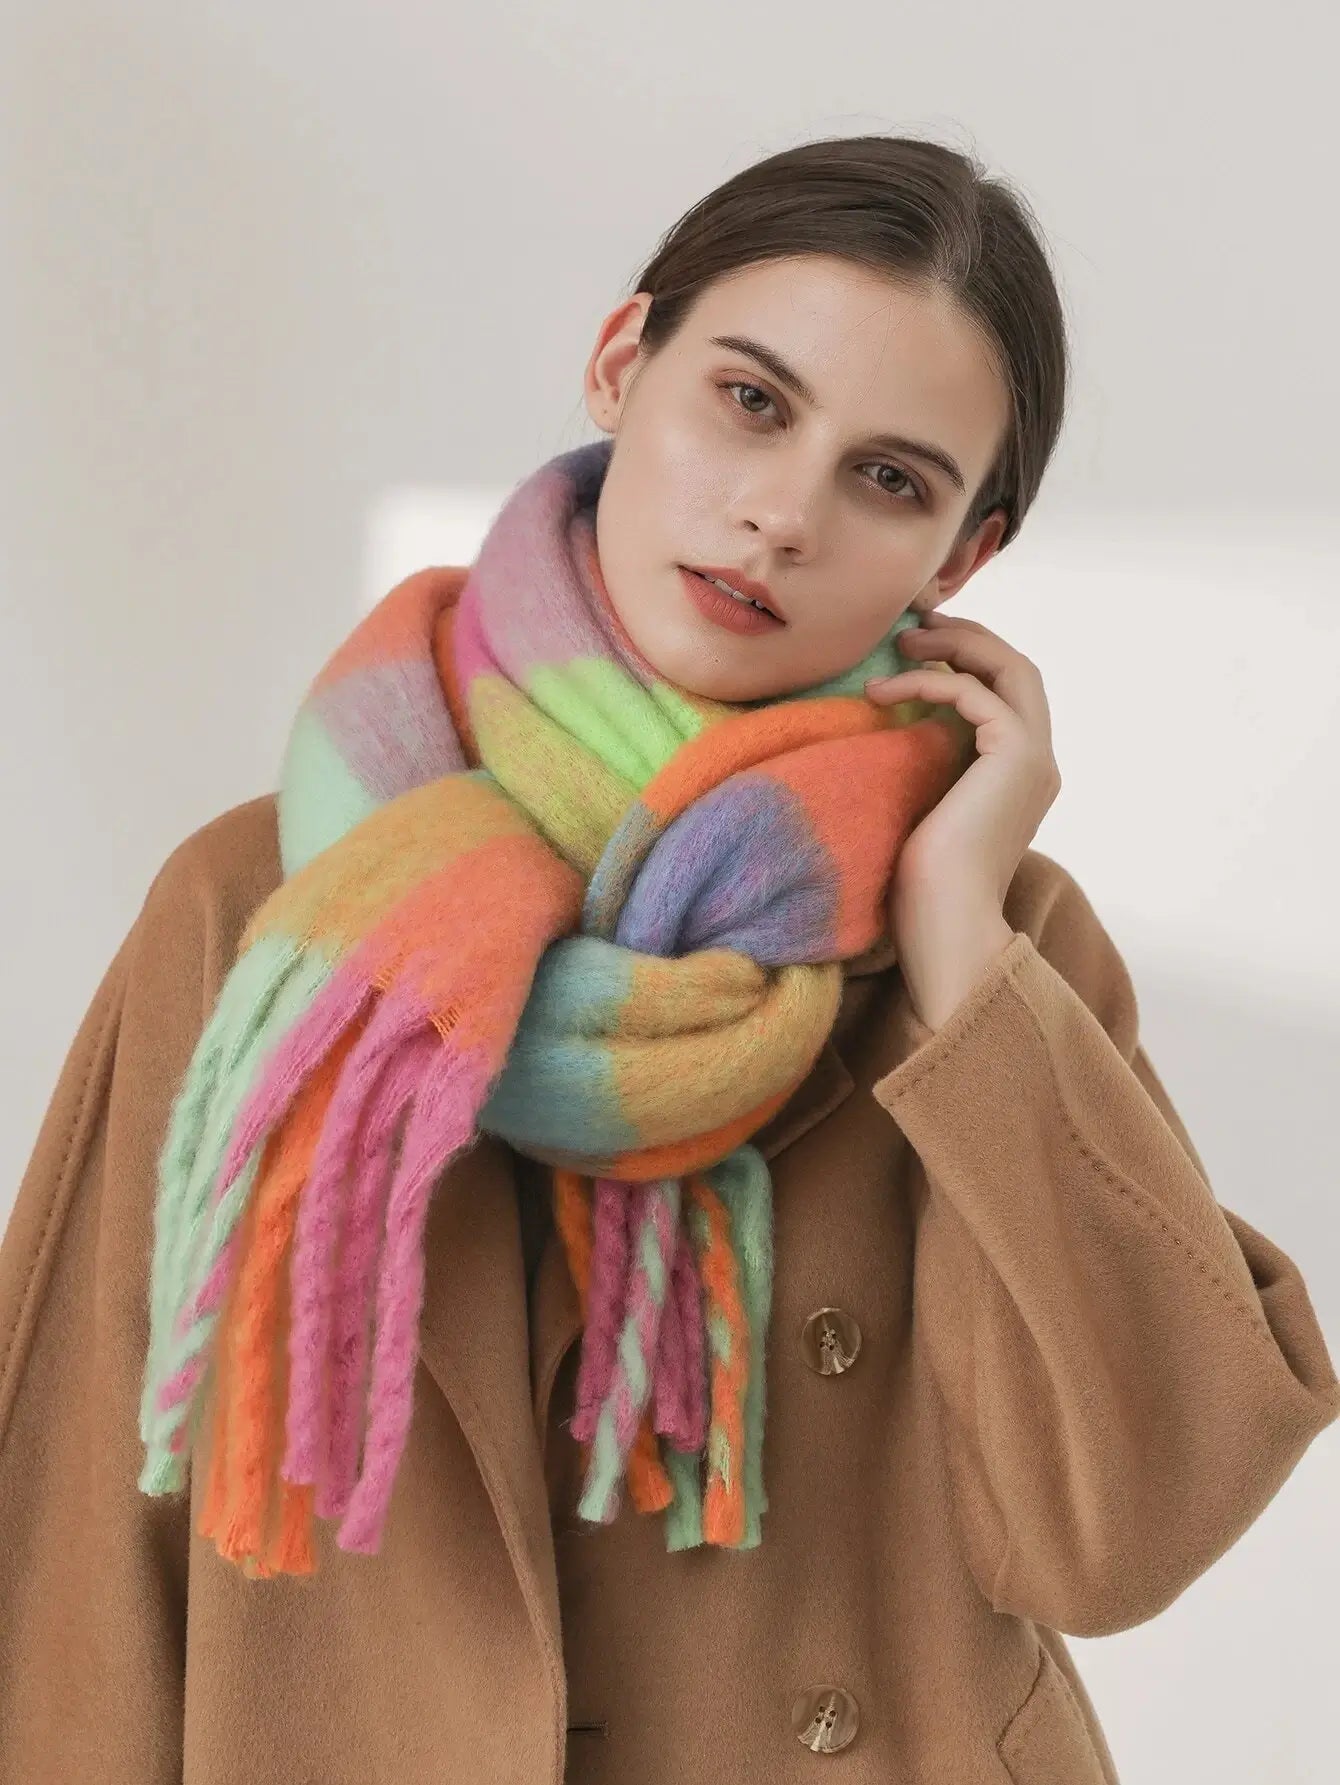 Comprar Cachecol Echarpe de Lã Grosso: Conforto e estilo para o inverno. Feito com lã de alta qualidade. Ideal para todas as ocasiões. - Anellimn